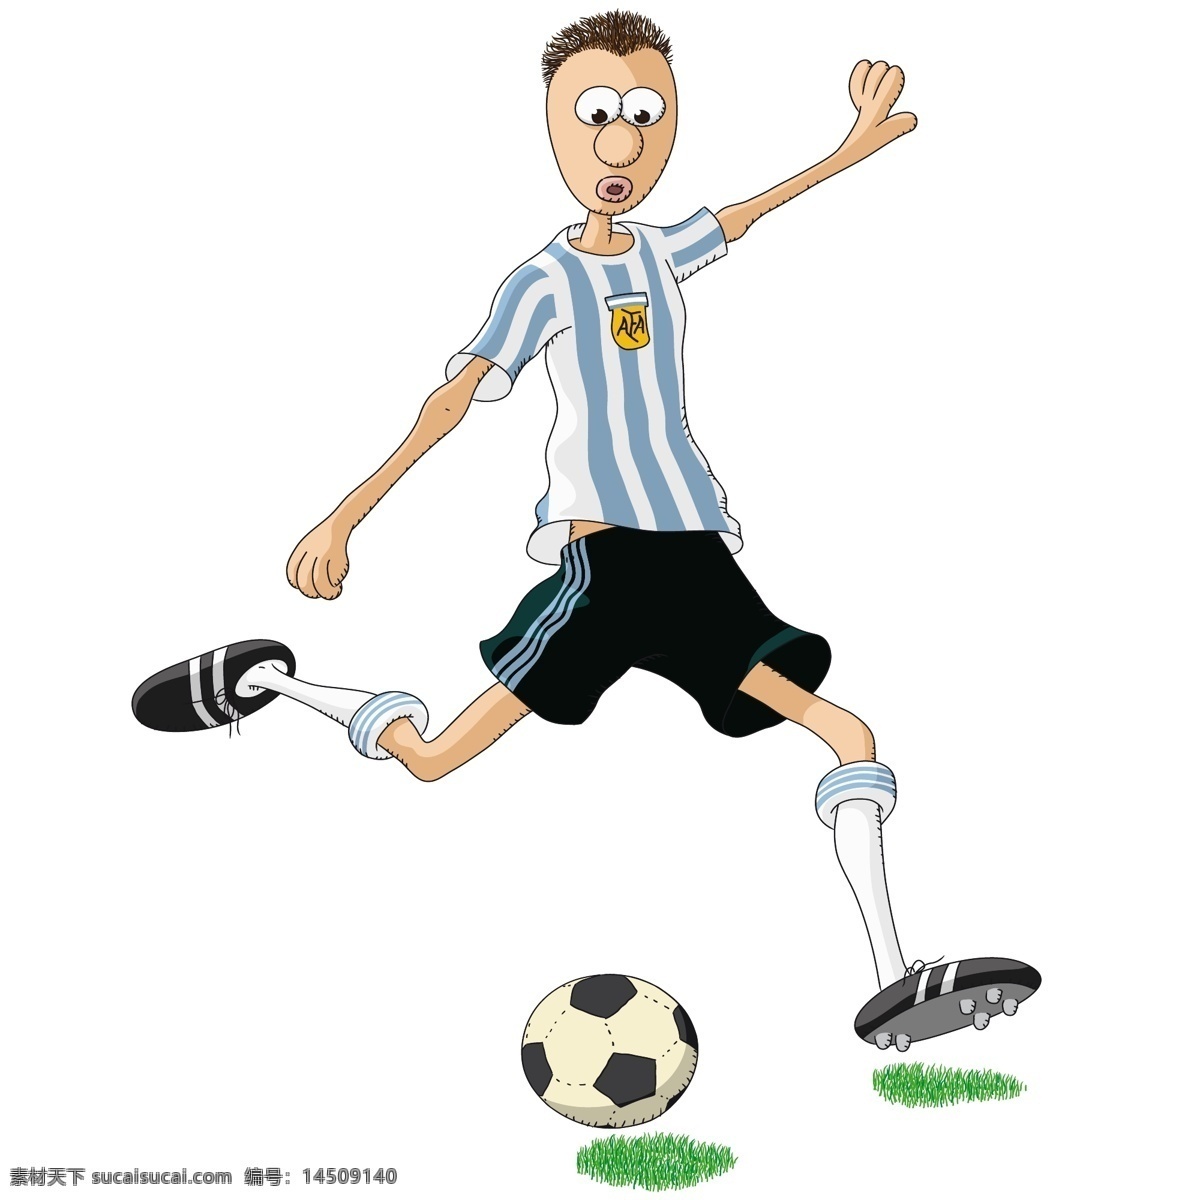 剪影 卡通 世界杯 手绘 踢足球 体育 体育运动 文化艺术 运动员 足球 矢量 模板下载 足球比赛 矢量图 日常生活